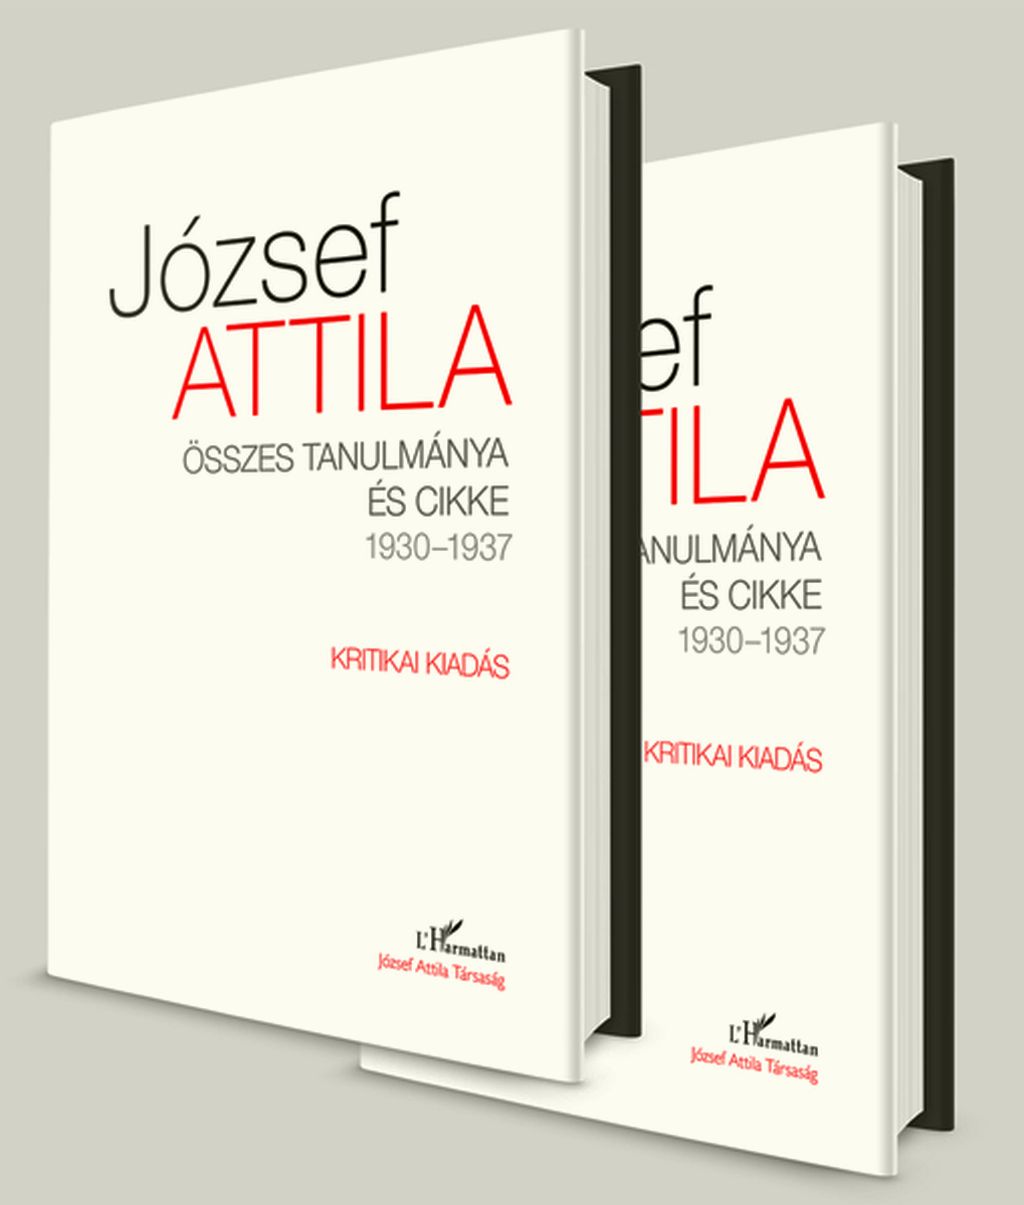 József Attila értekező prózájának kritikai kiadása